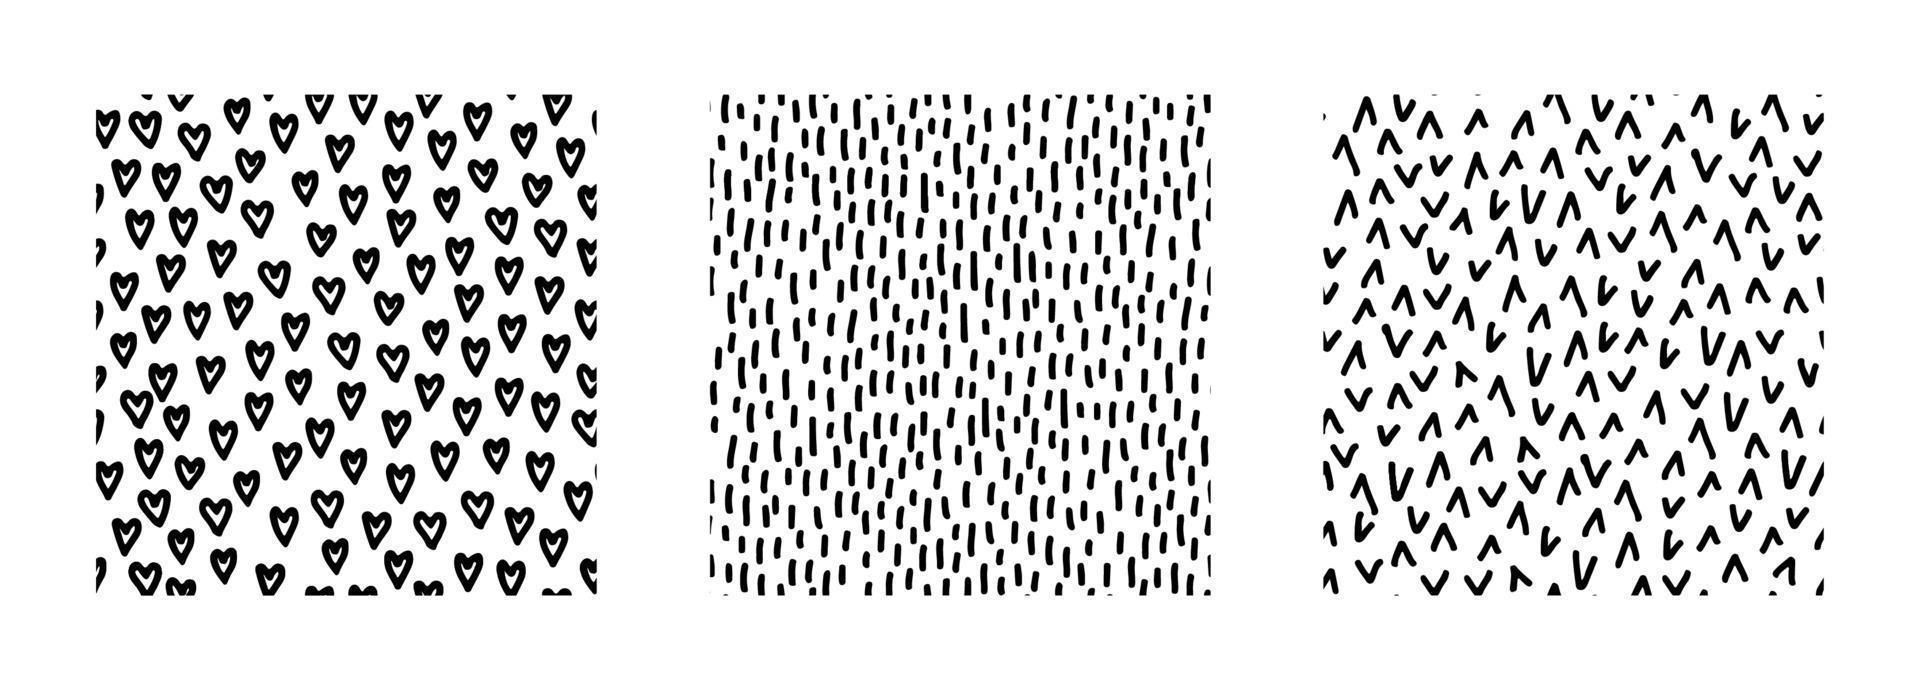 Reihe von abstrakten nahtlosen Mustern mit Texturen. einfache Schwarz-Weiß-Hintergründe mit Kritzeleien. vektor handgezeichnete illustration. Perfekt für Dekorationen, Tapeten, Geschenkpapier, Stoff, Druck.